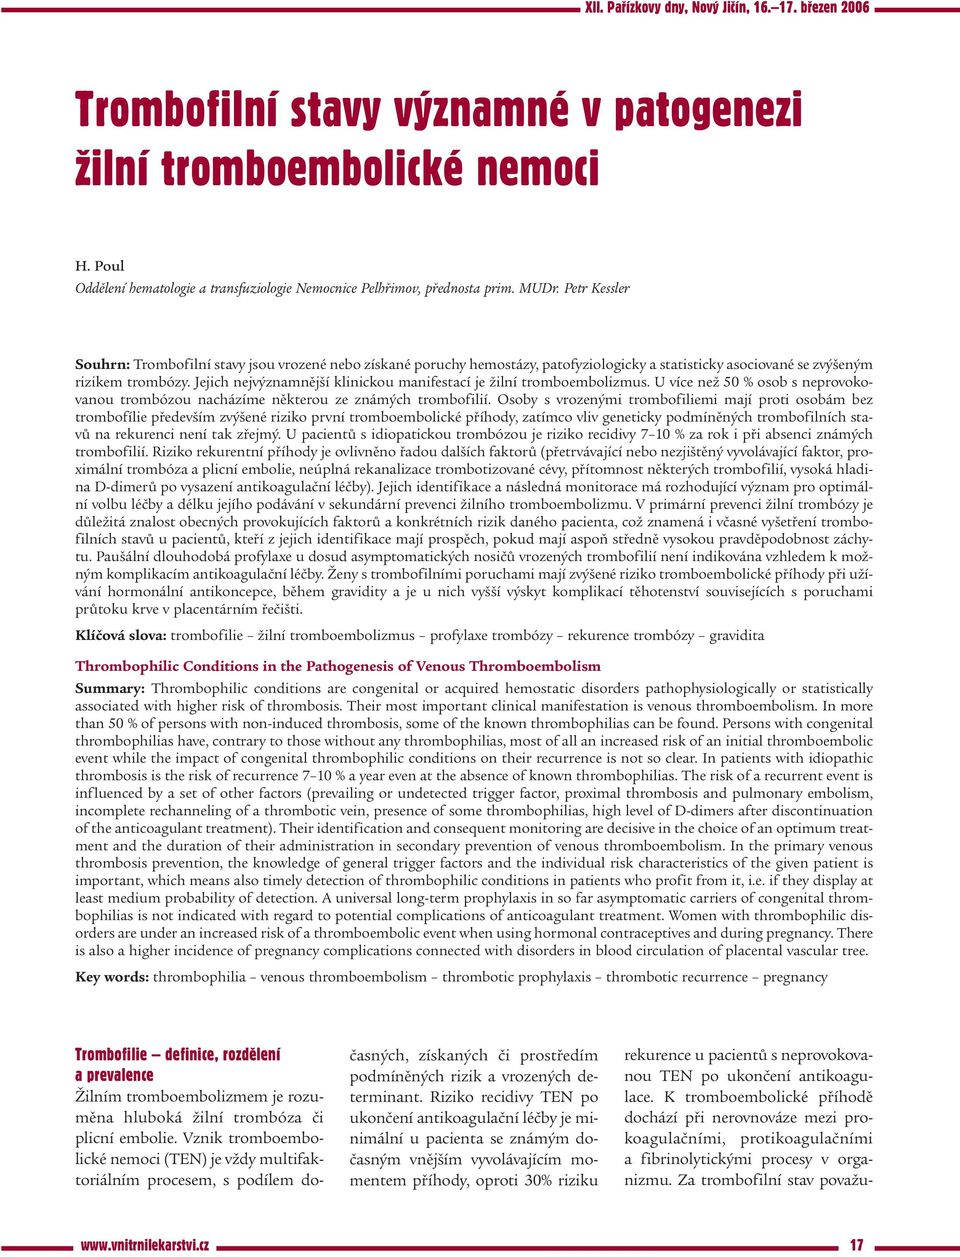 Petr Kessler Souhrn: Trombofilní stavy jsou vrozené nebo získané poruchy hemostázy, patofyziologicky a statisticky asociované se zvýšeným rizikem trombózy.